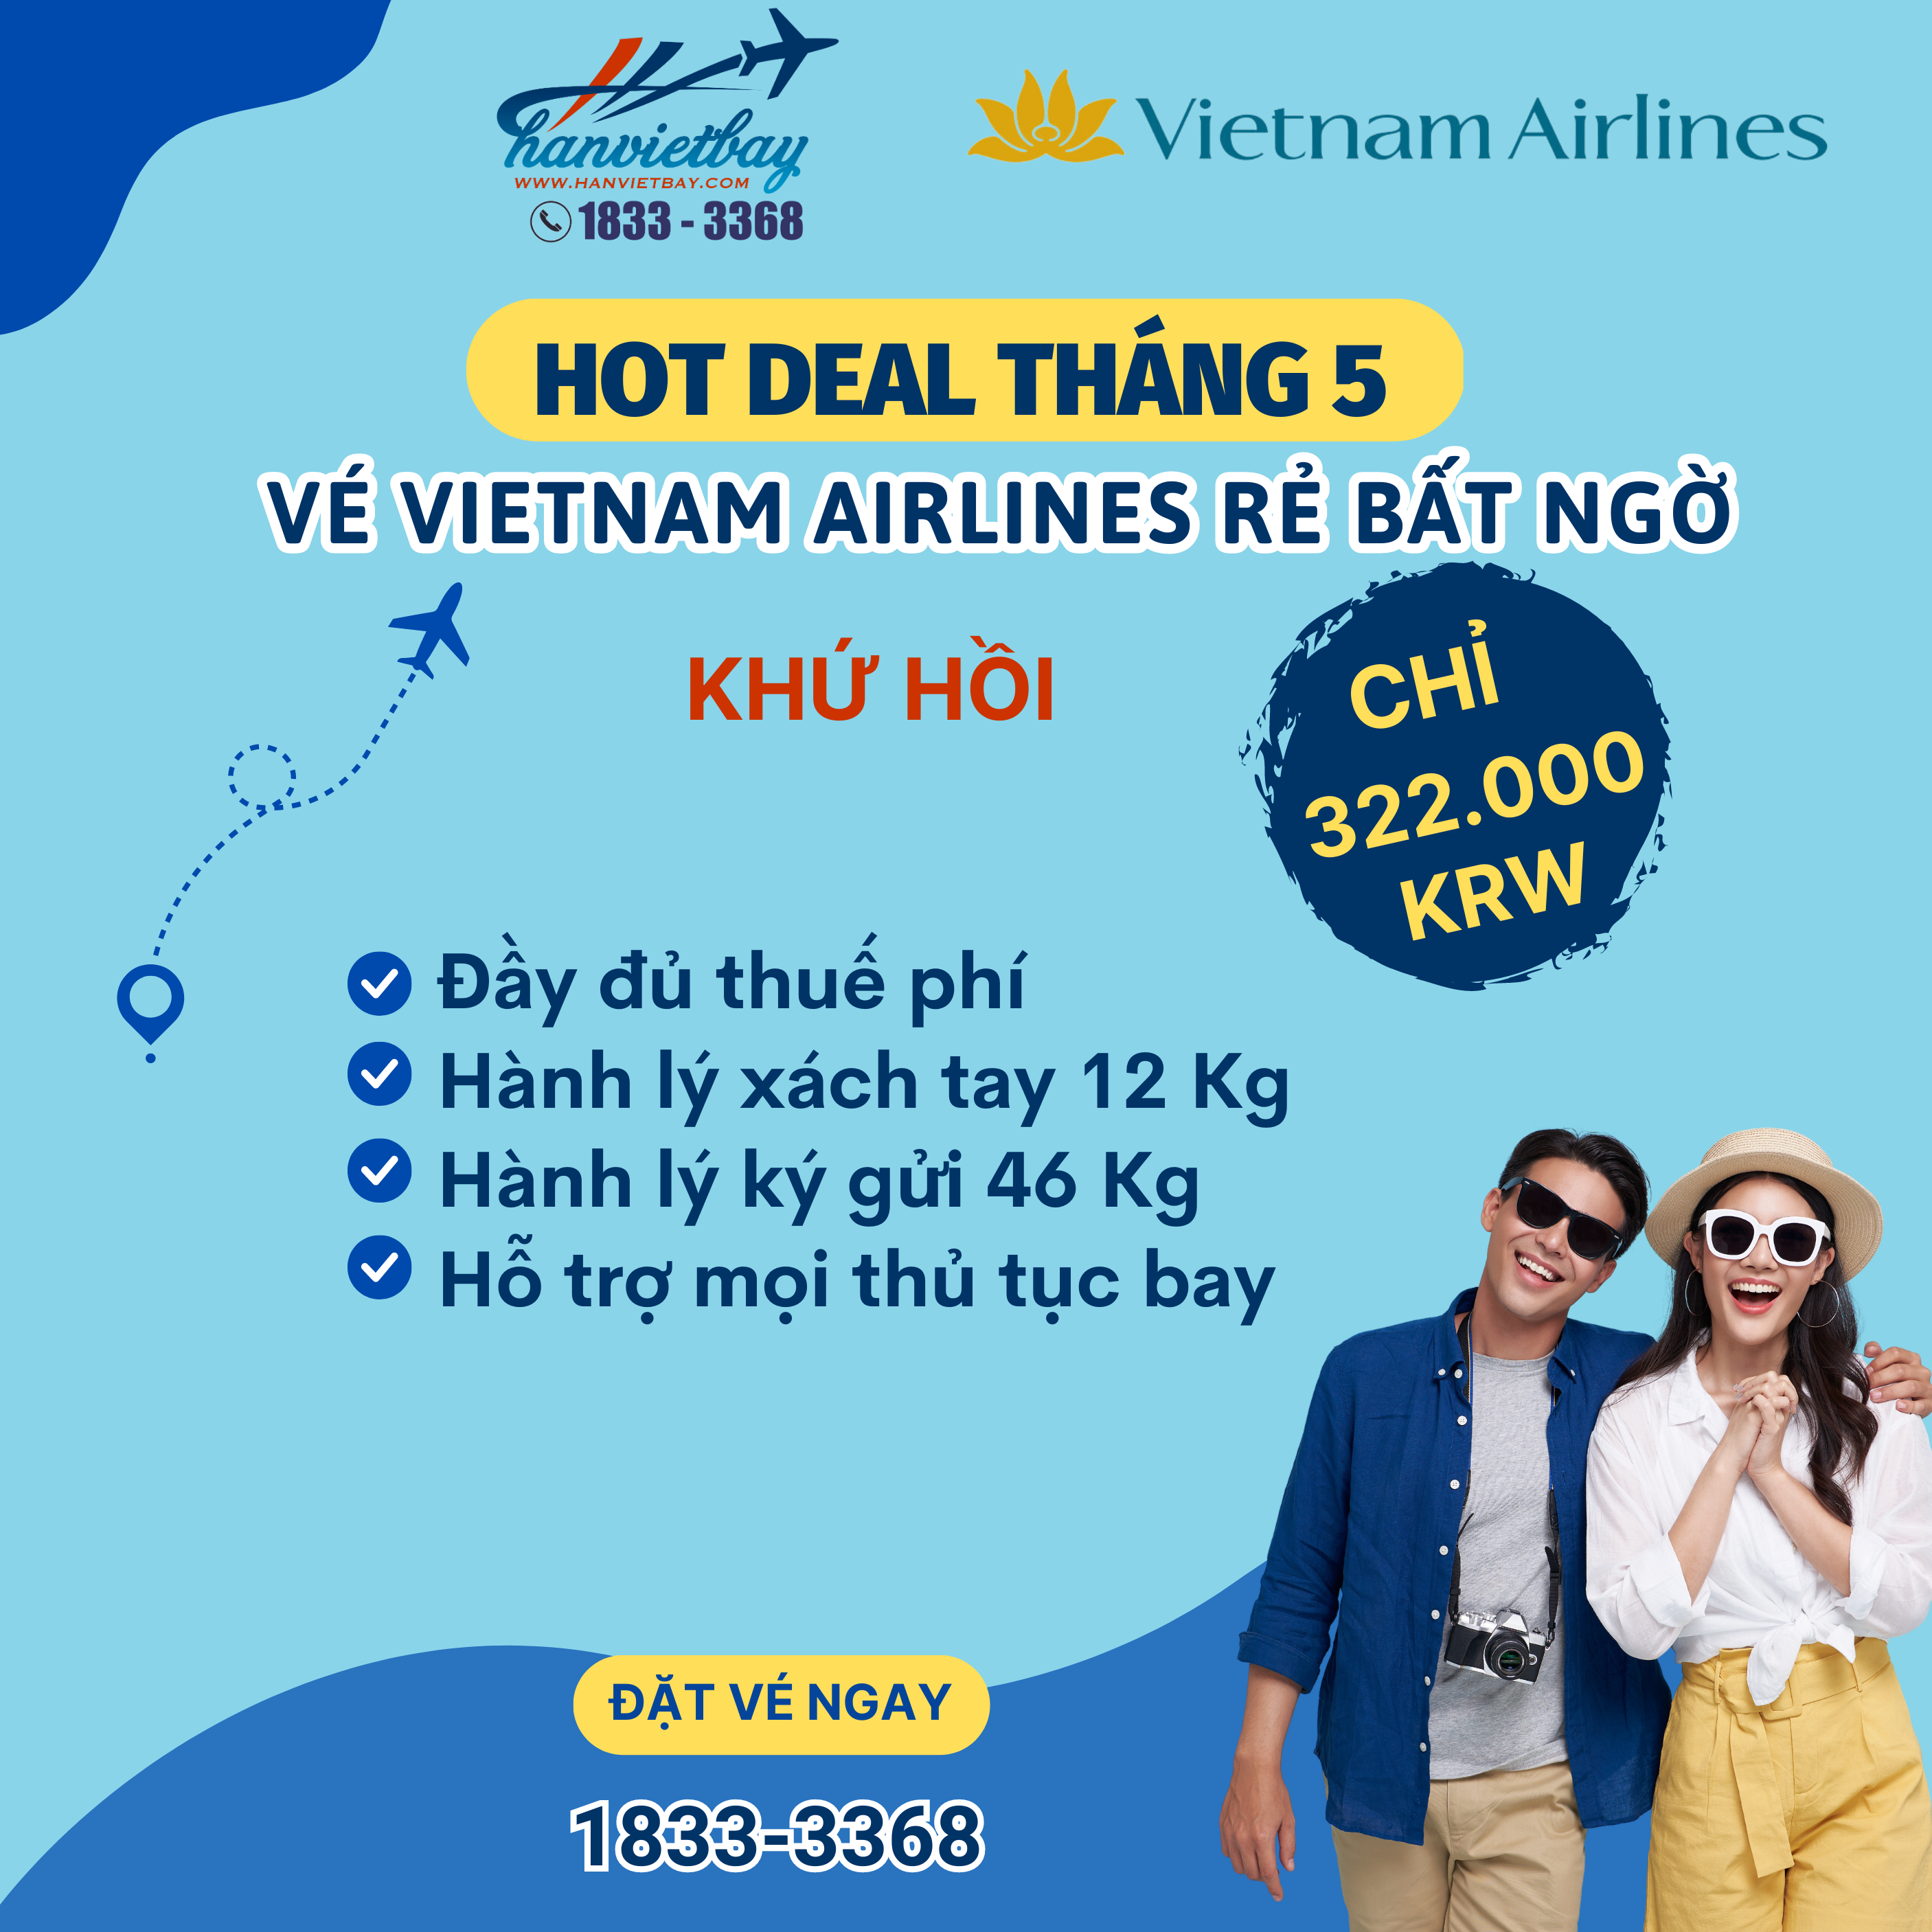 Vé Vietnam Airlines Tháng 5 khứ hồi siêu rẻ